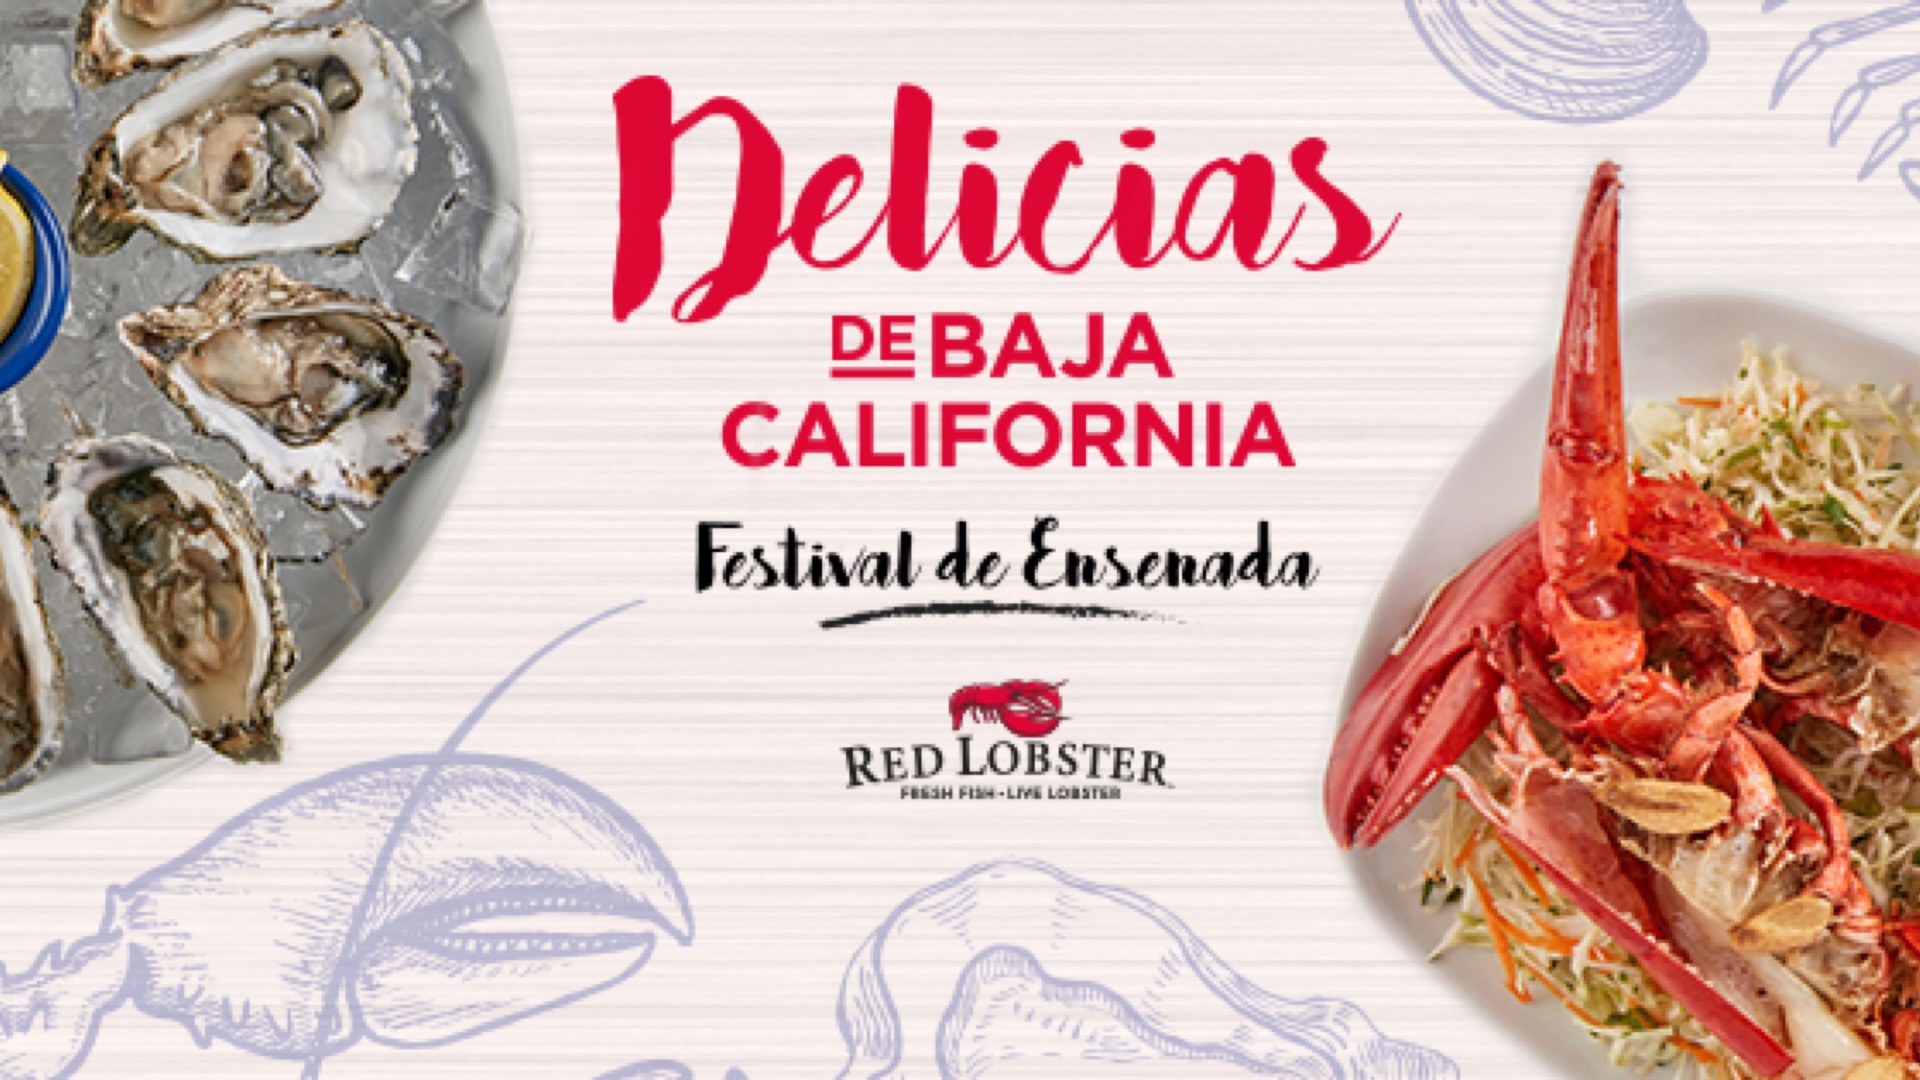 Llega el “Festival de Ensenada” a Red Lobster